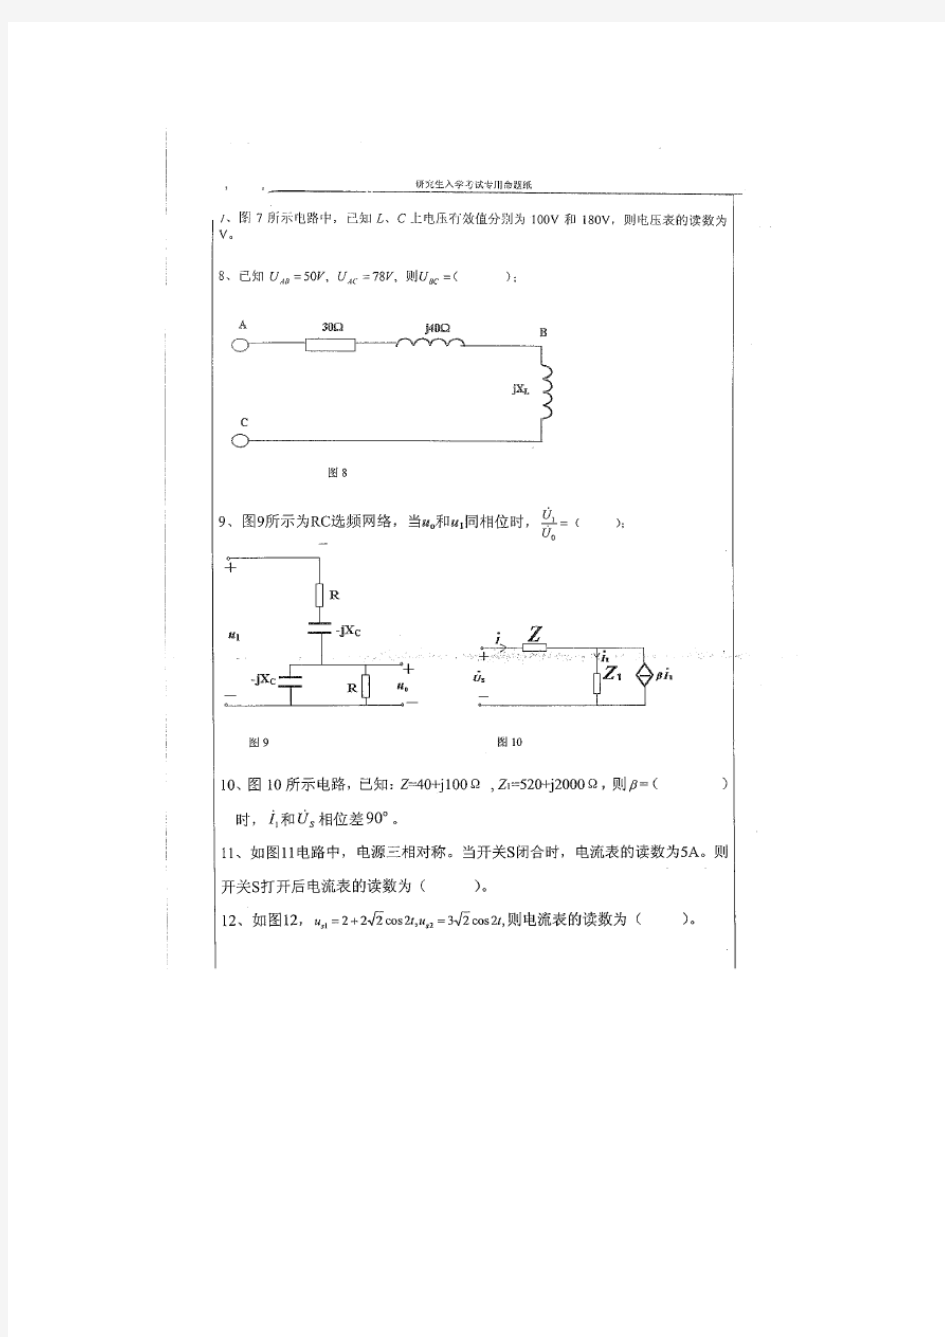 湖南大学历年考研电路真题答案(01-10)(附2011年真题